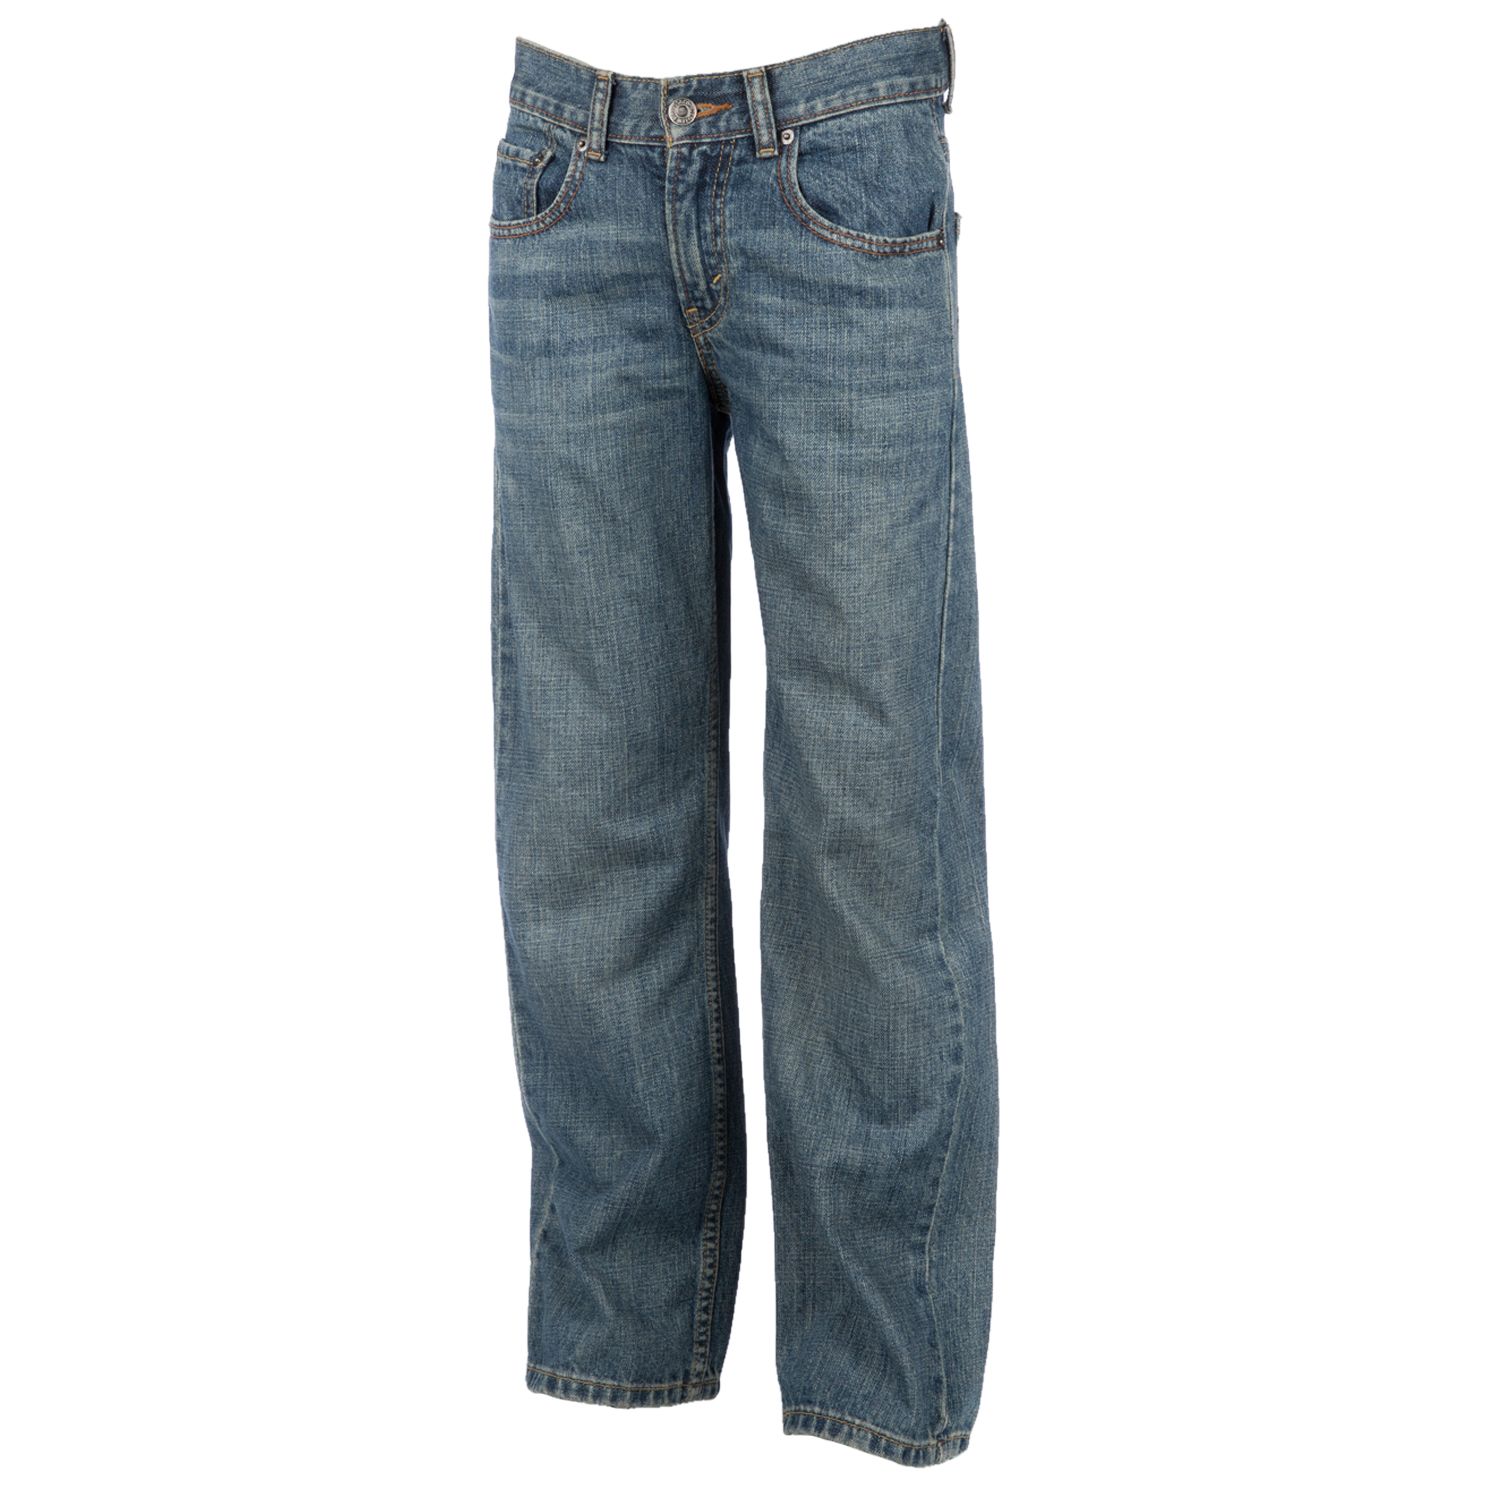 levis 569 jeans kohls